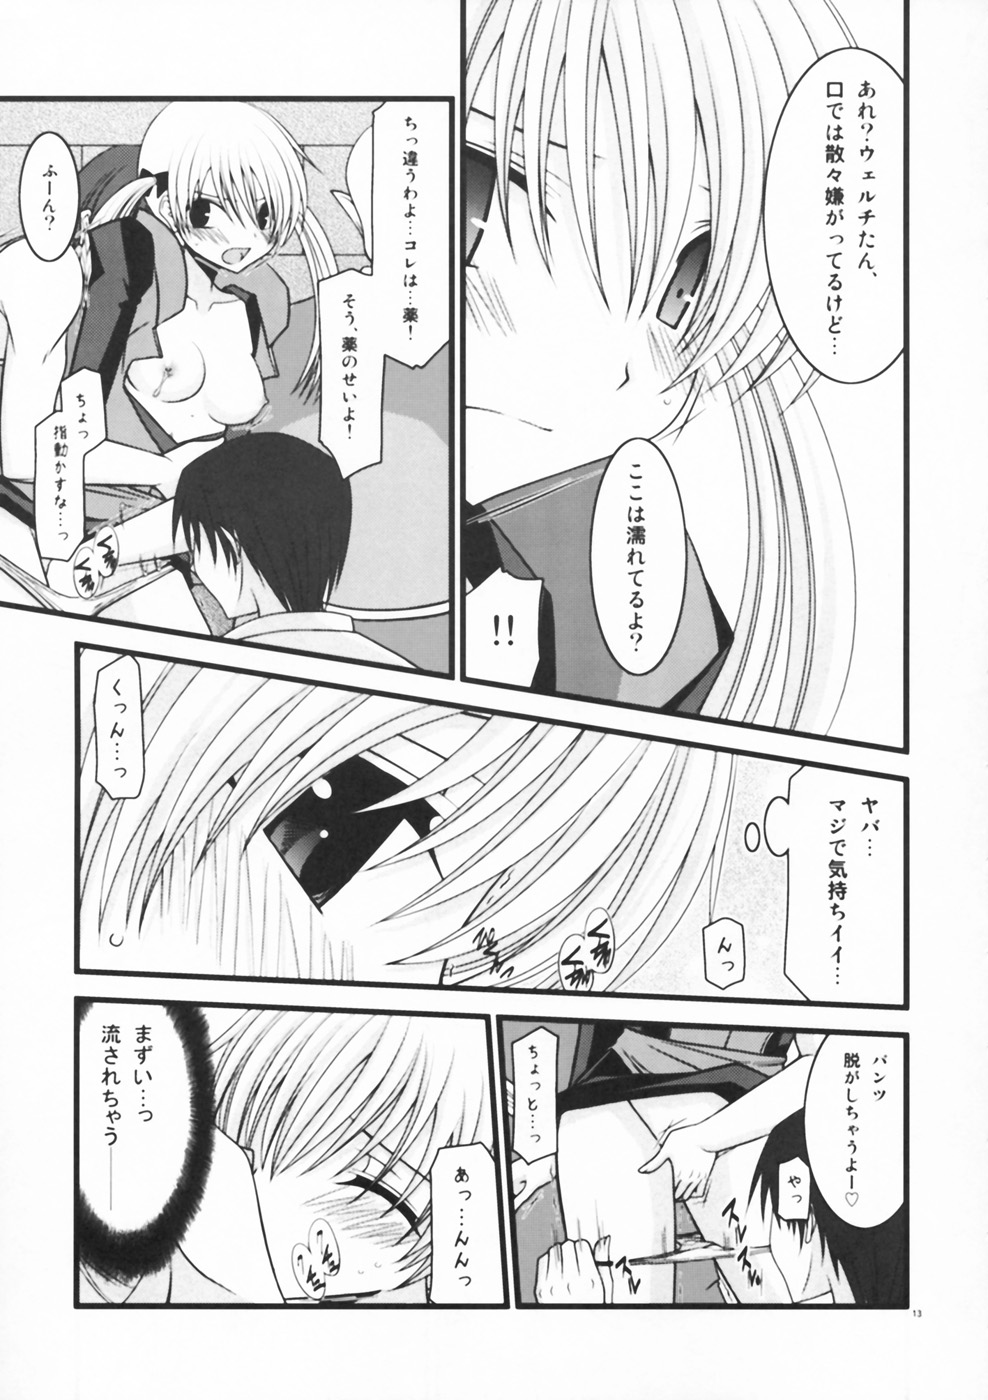 [valssu (Charu)] Horegusuri no Goshiyou wa Keikakuteki ni (Star Ocean: The Second Story) page 13 full